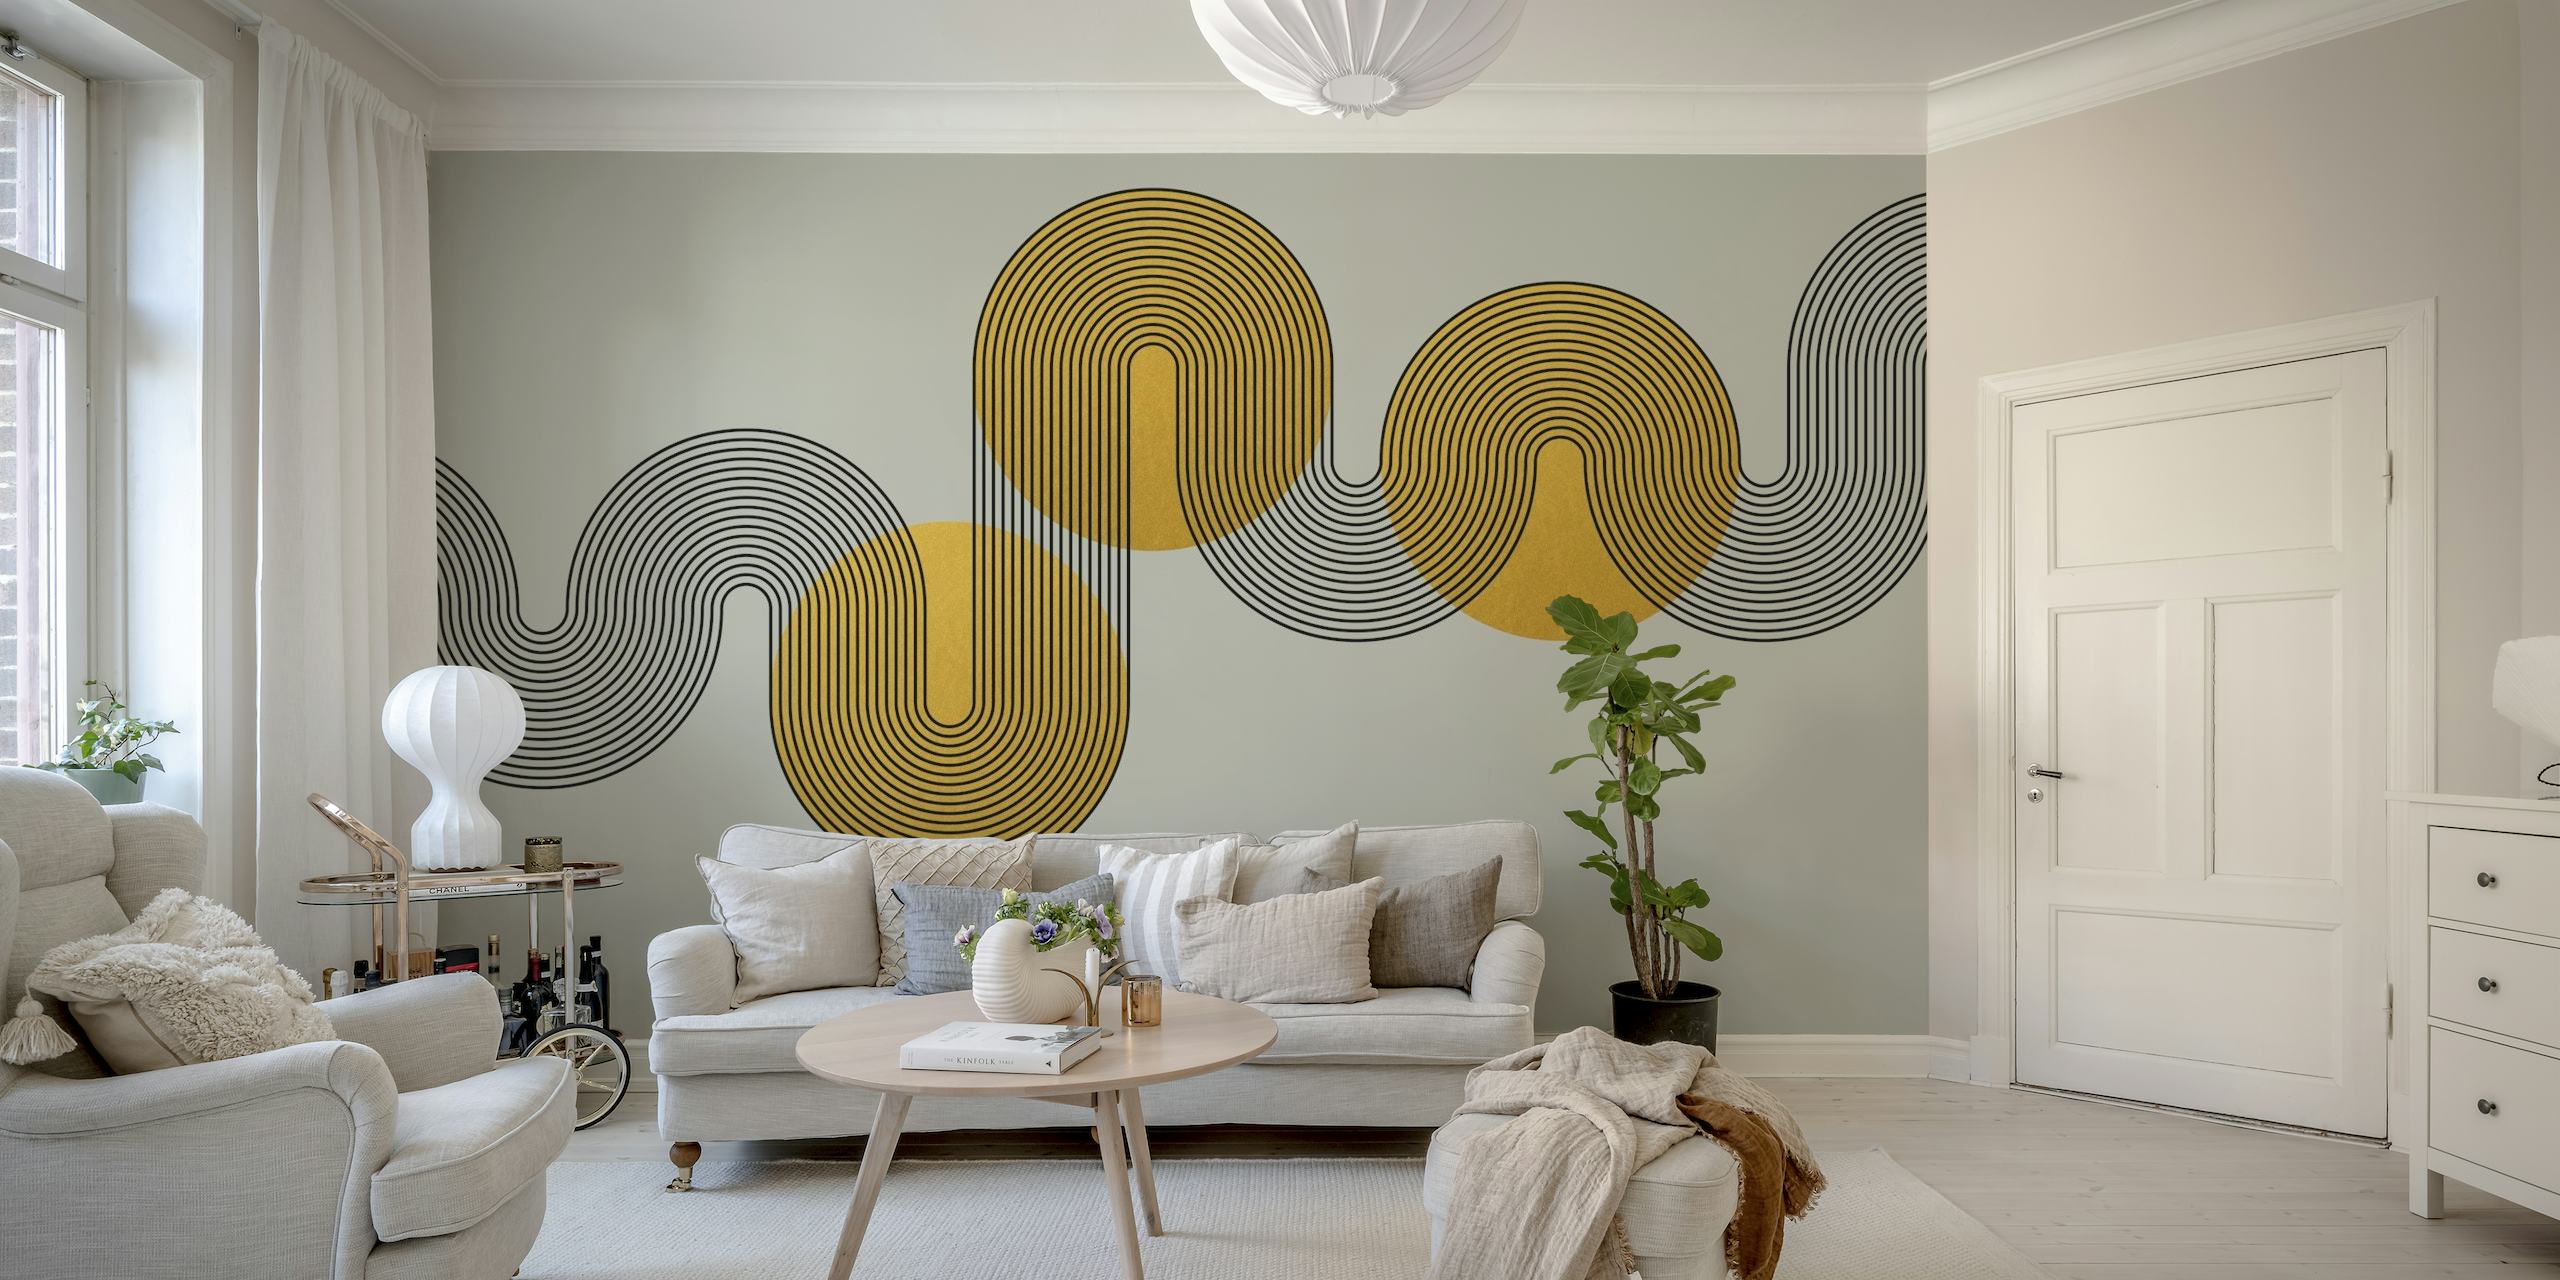 Abstract fotobehang in Art Deco-stijl met geometrische vormen in goud- en grijstinten